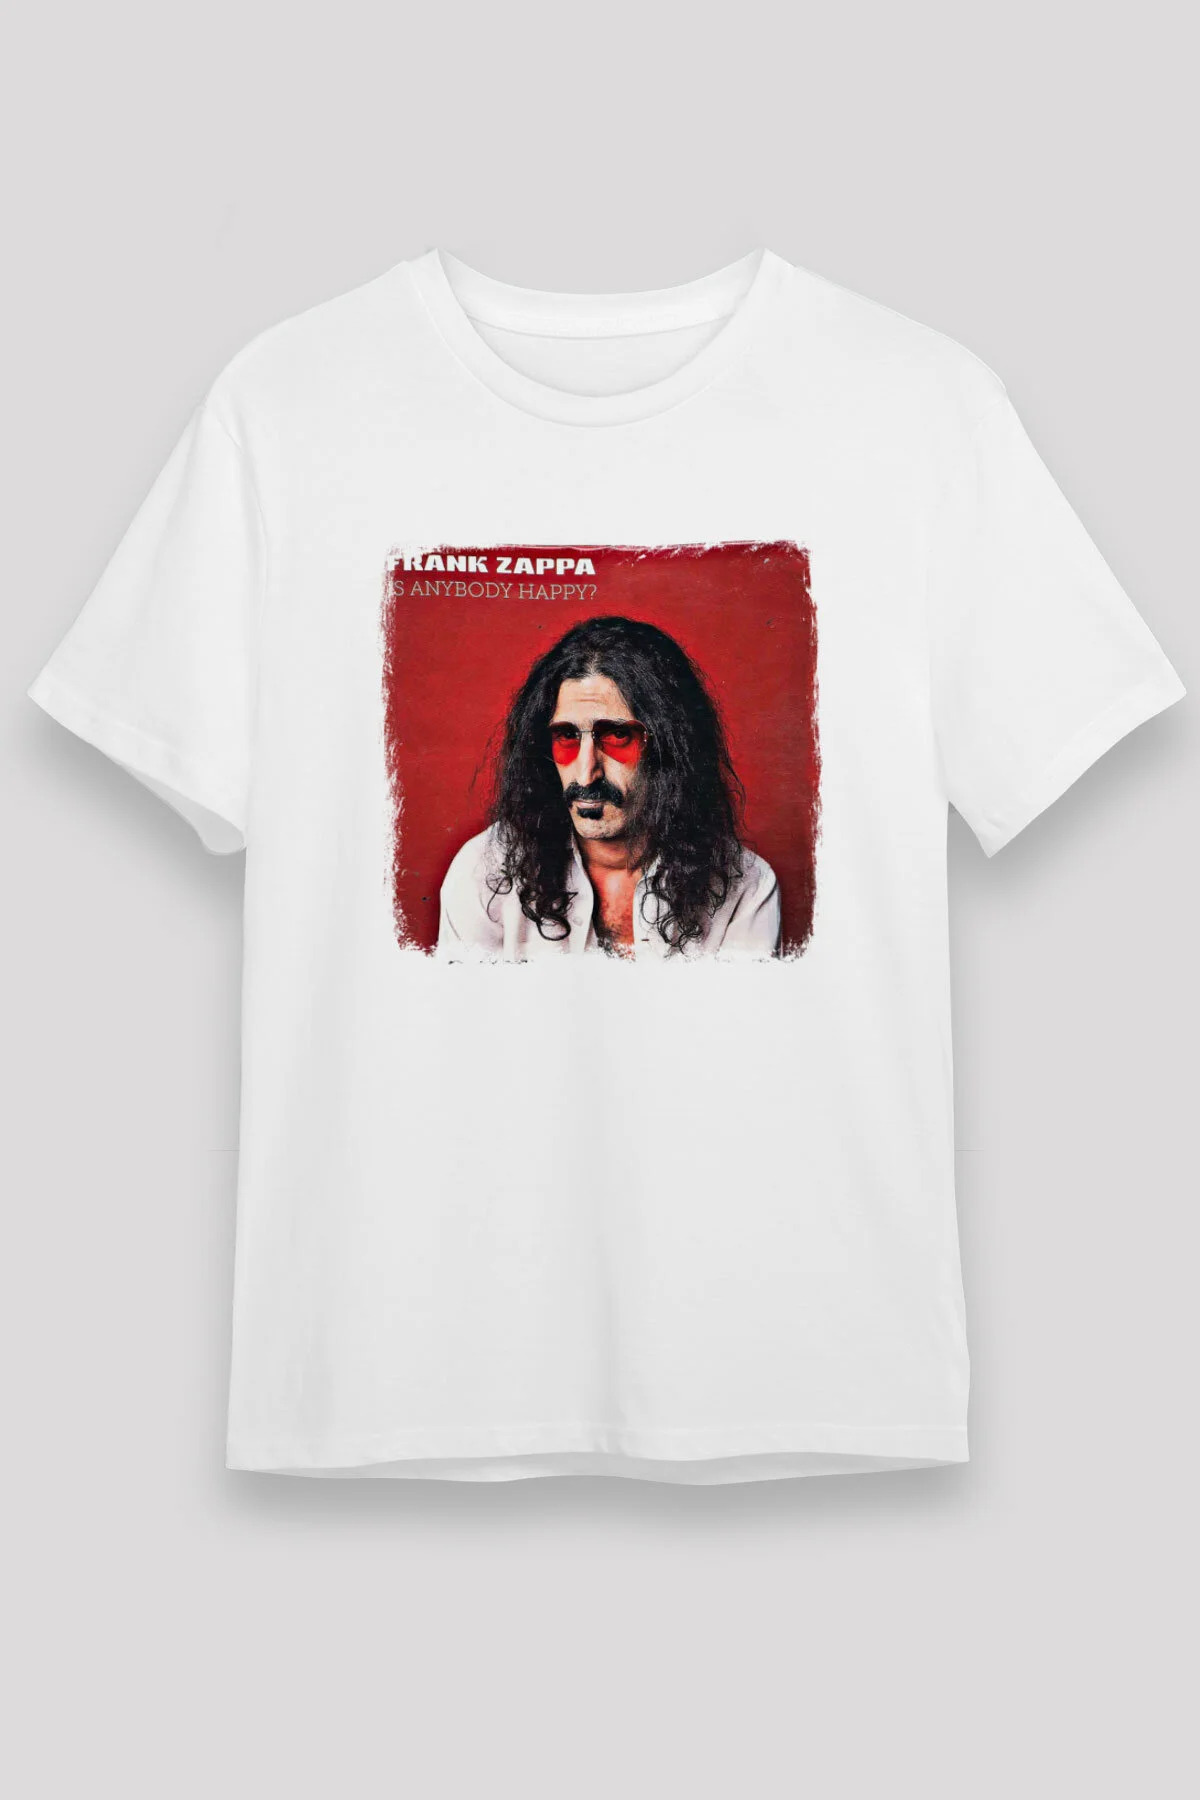 Frank Zappa T shirt , Music Band ,Unisex Tshirt 05/